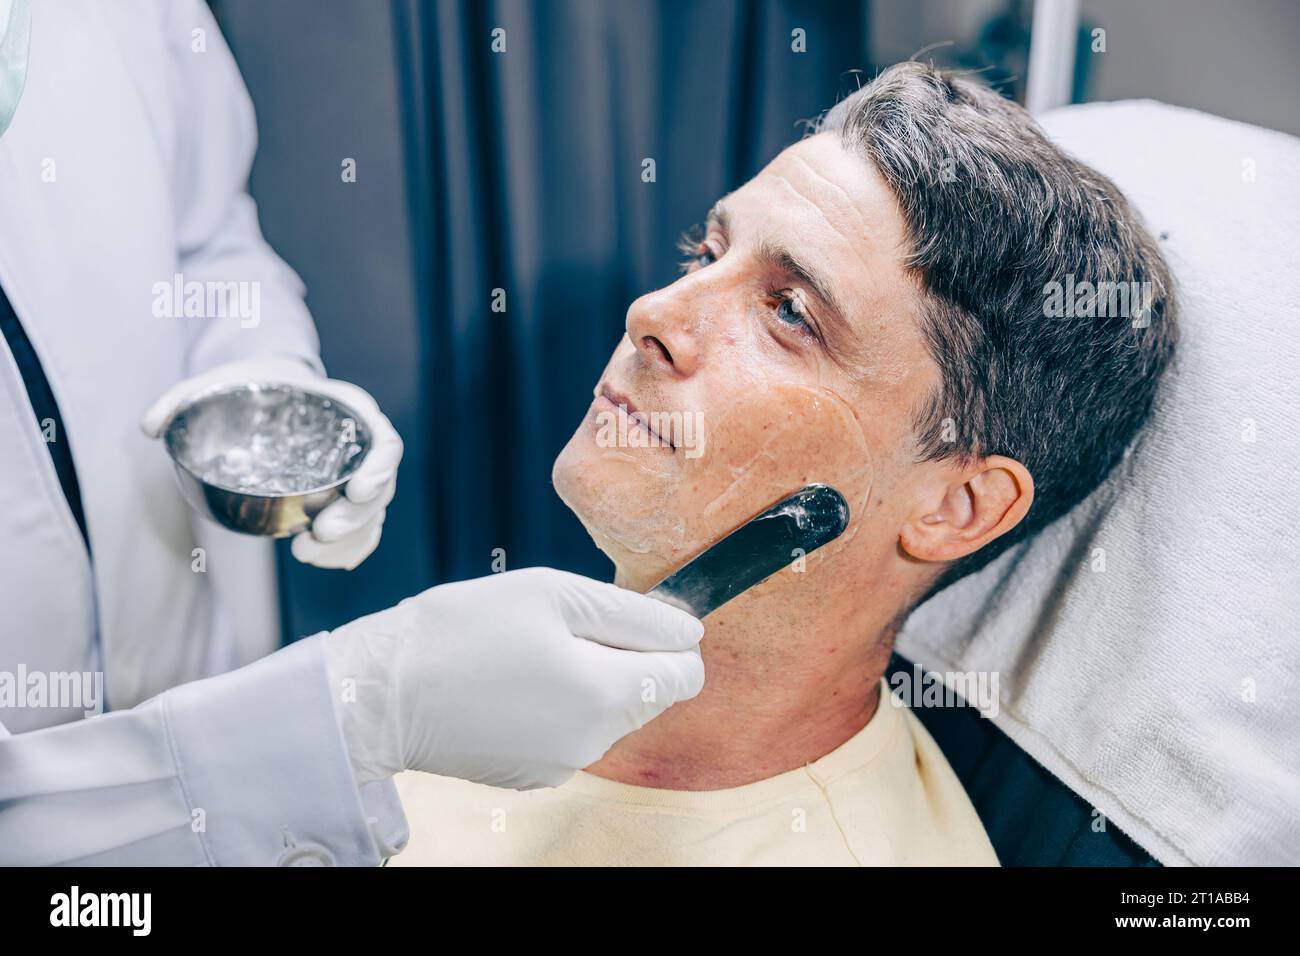 Médecin de la peau appliquant RF Thermage Gel ou traitement ultrasonique Conductive Gel traitement facial Skincare homme adulte réduisent les rides à la clinique anti-vieillissement Banque D'Images